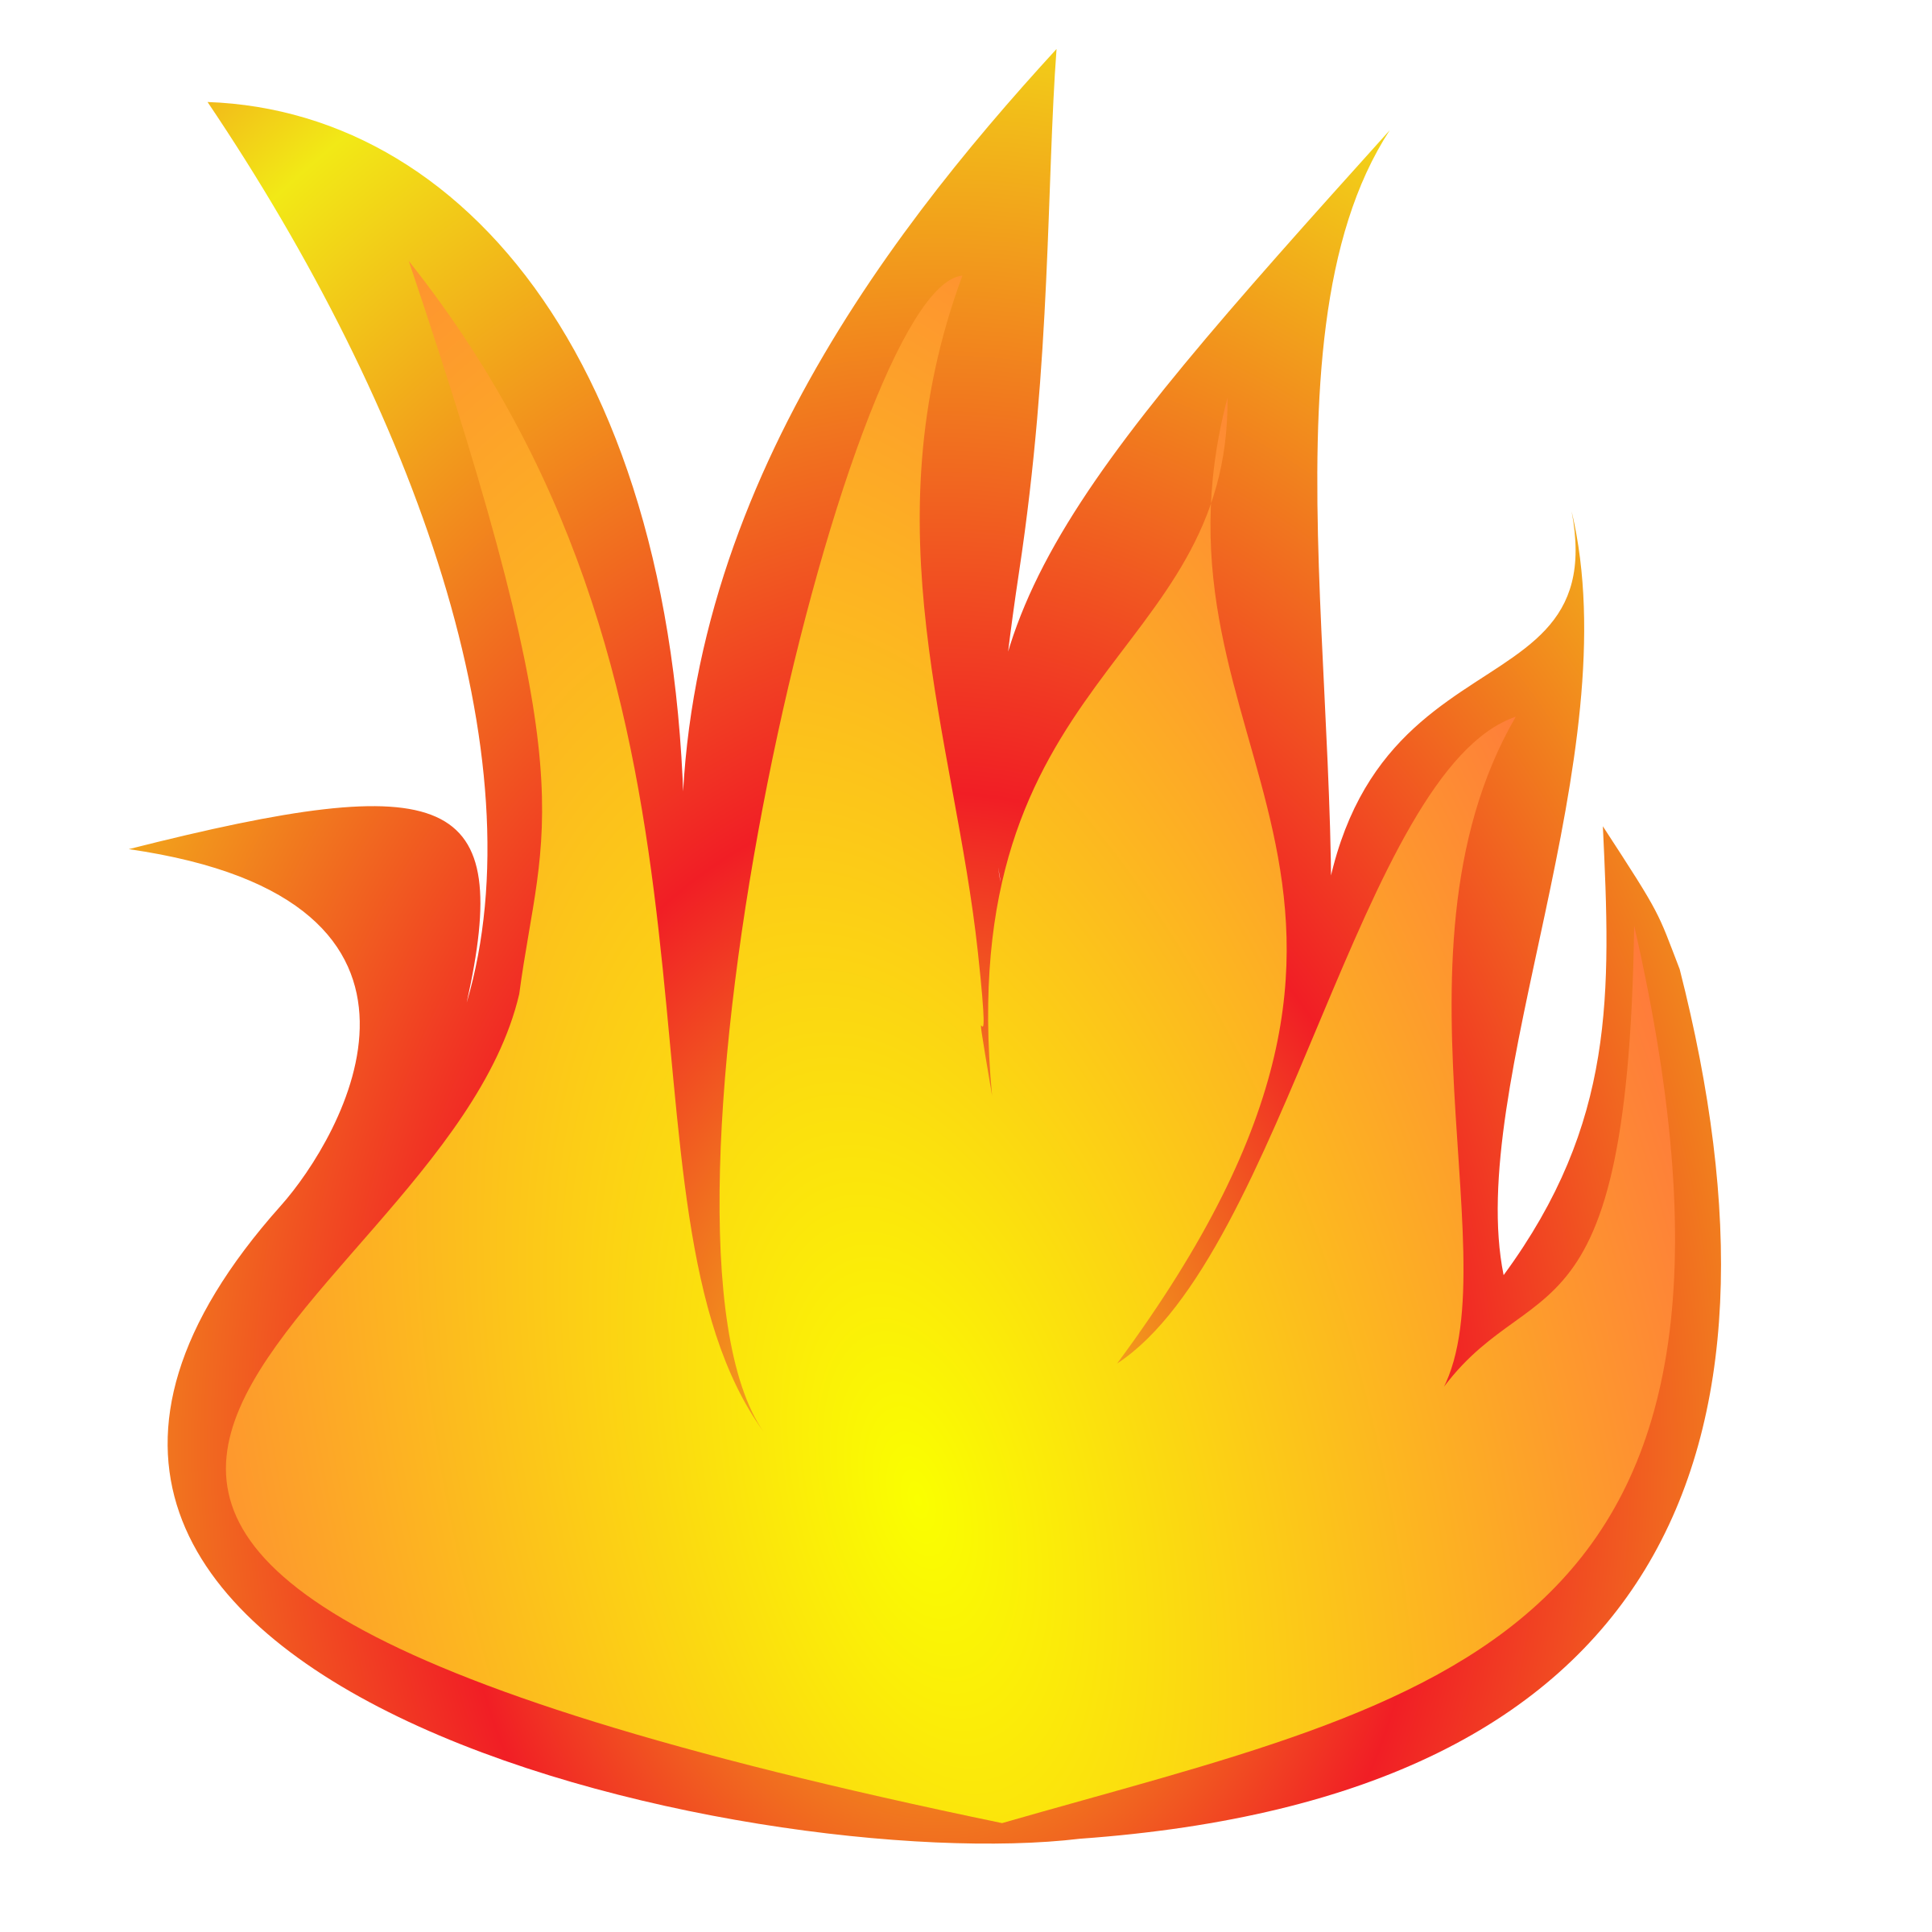 clip art fire flames symbol - photo #45